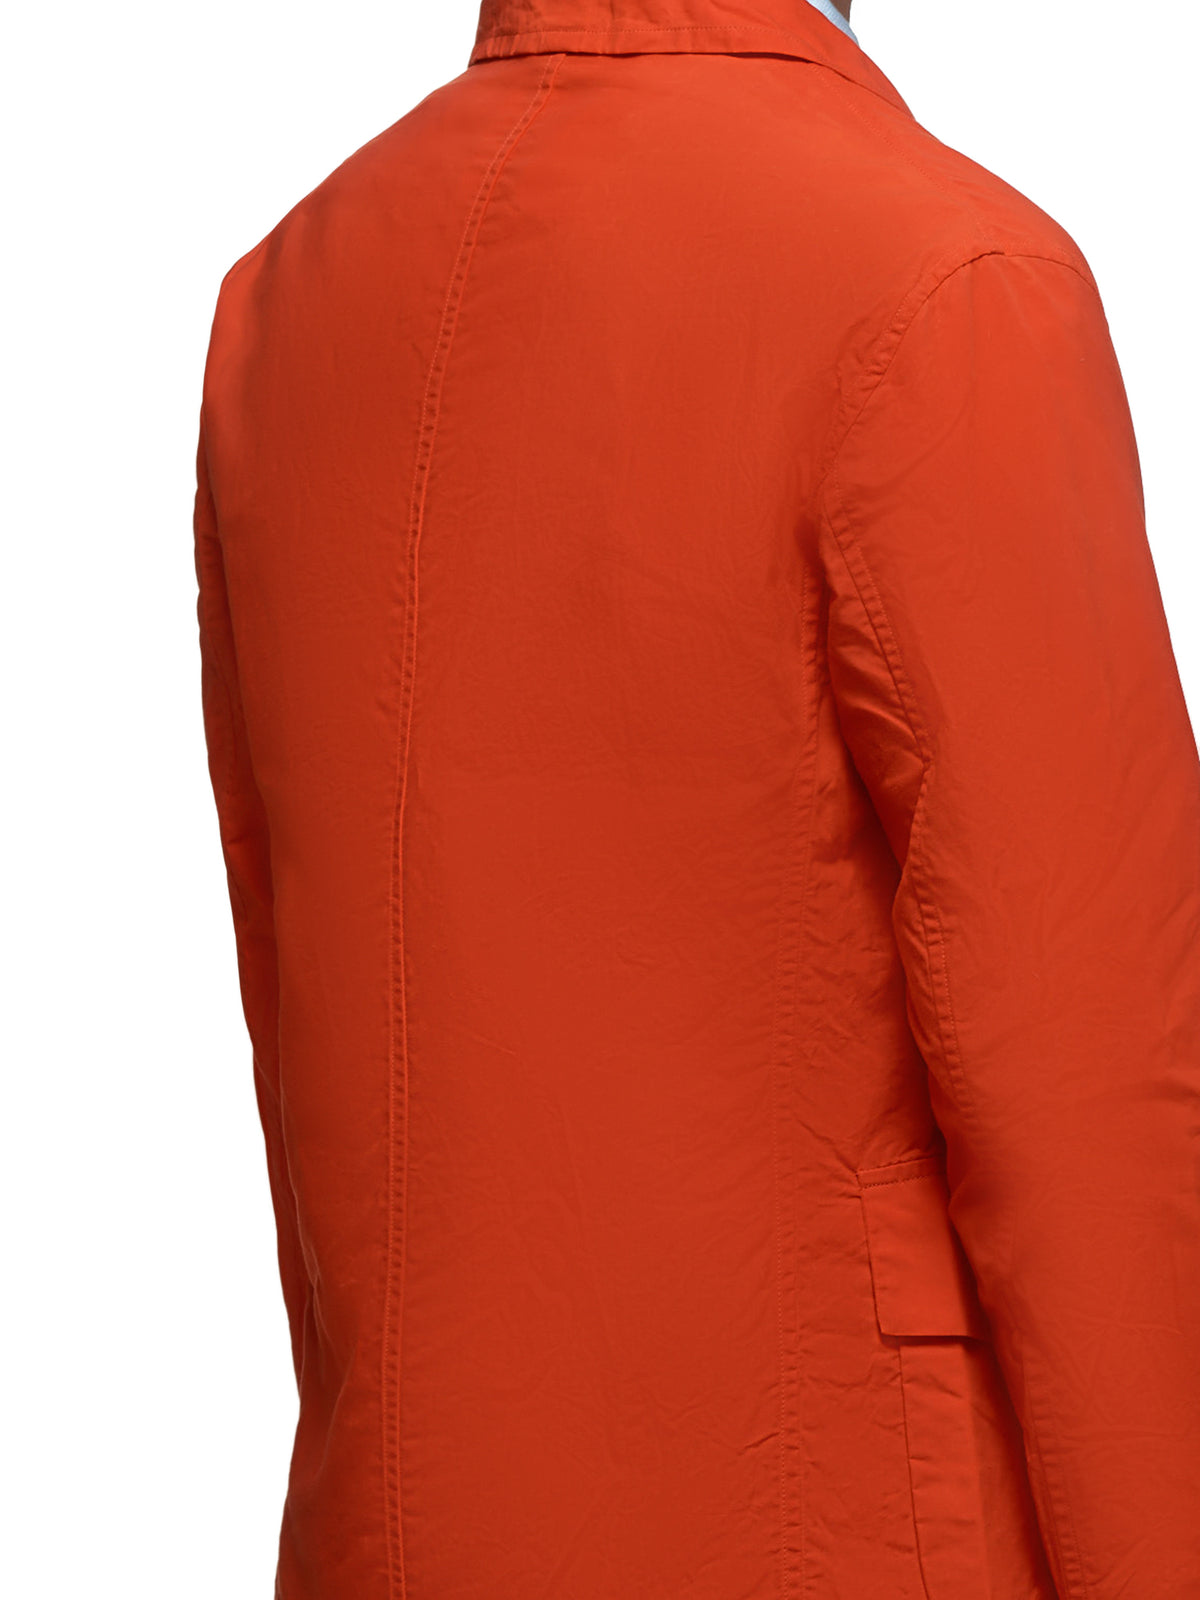 Crinkled Jacket (HV218-ORANGE)